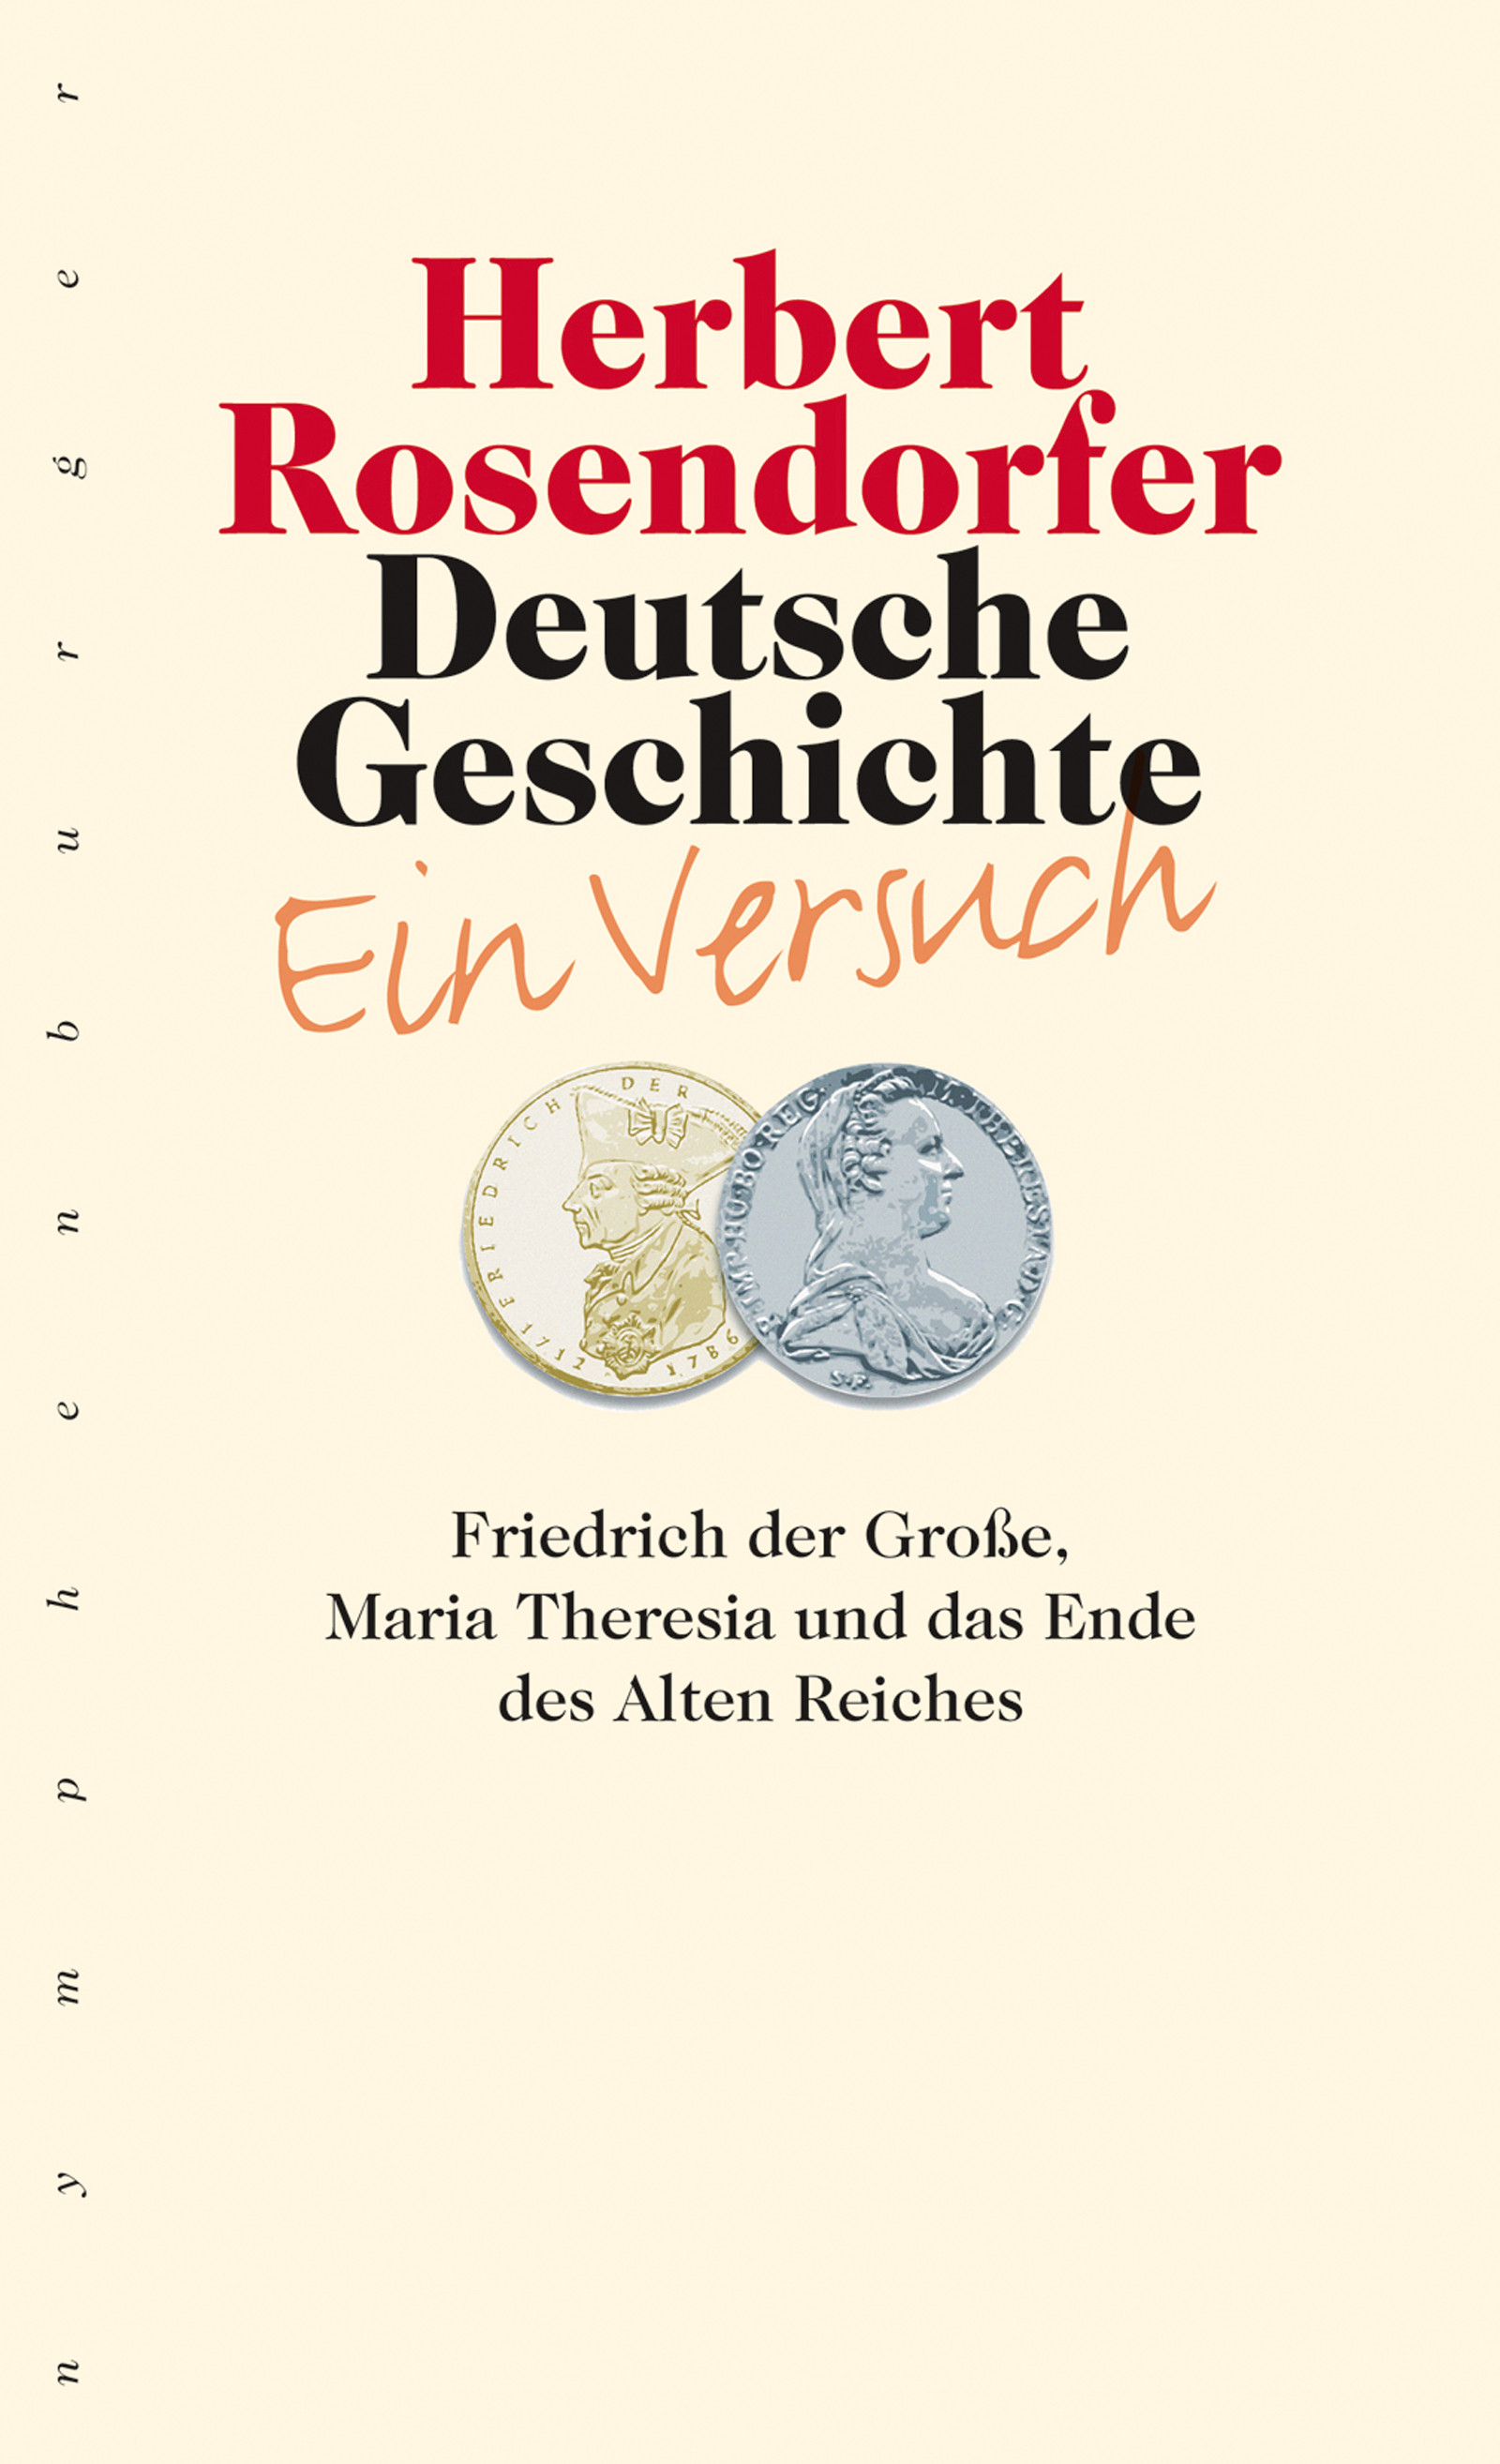 Deutsche Geschichte - Ein Versuch, Bd. 6 - PDF eBook kaufen | Ebooks Mittelalter - Renaissance ...